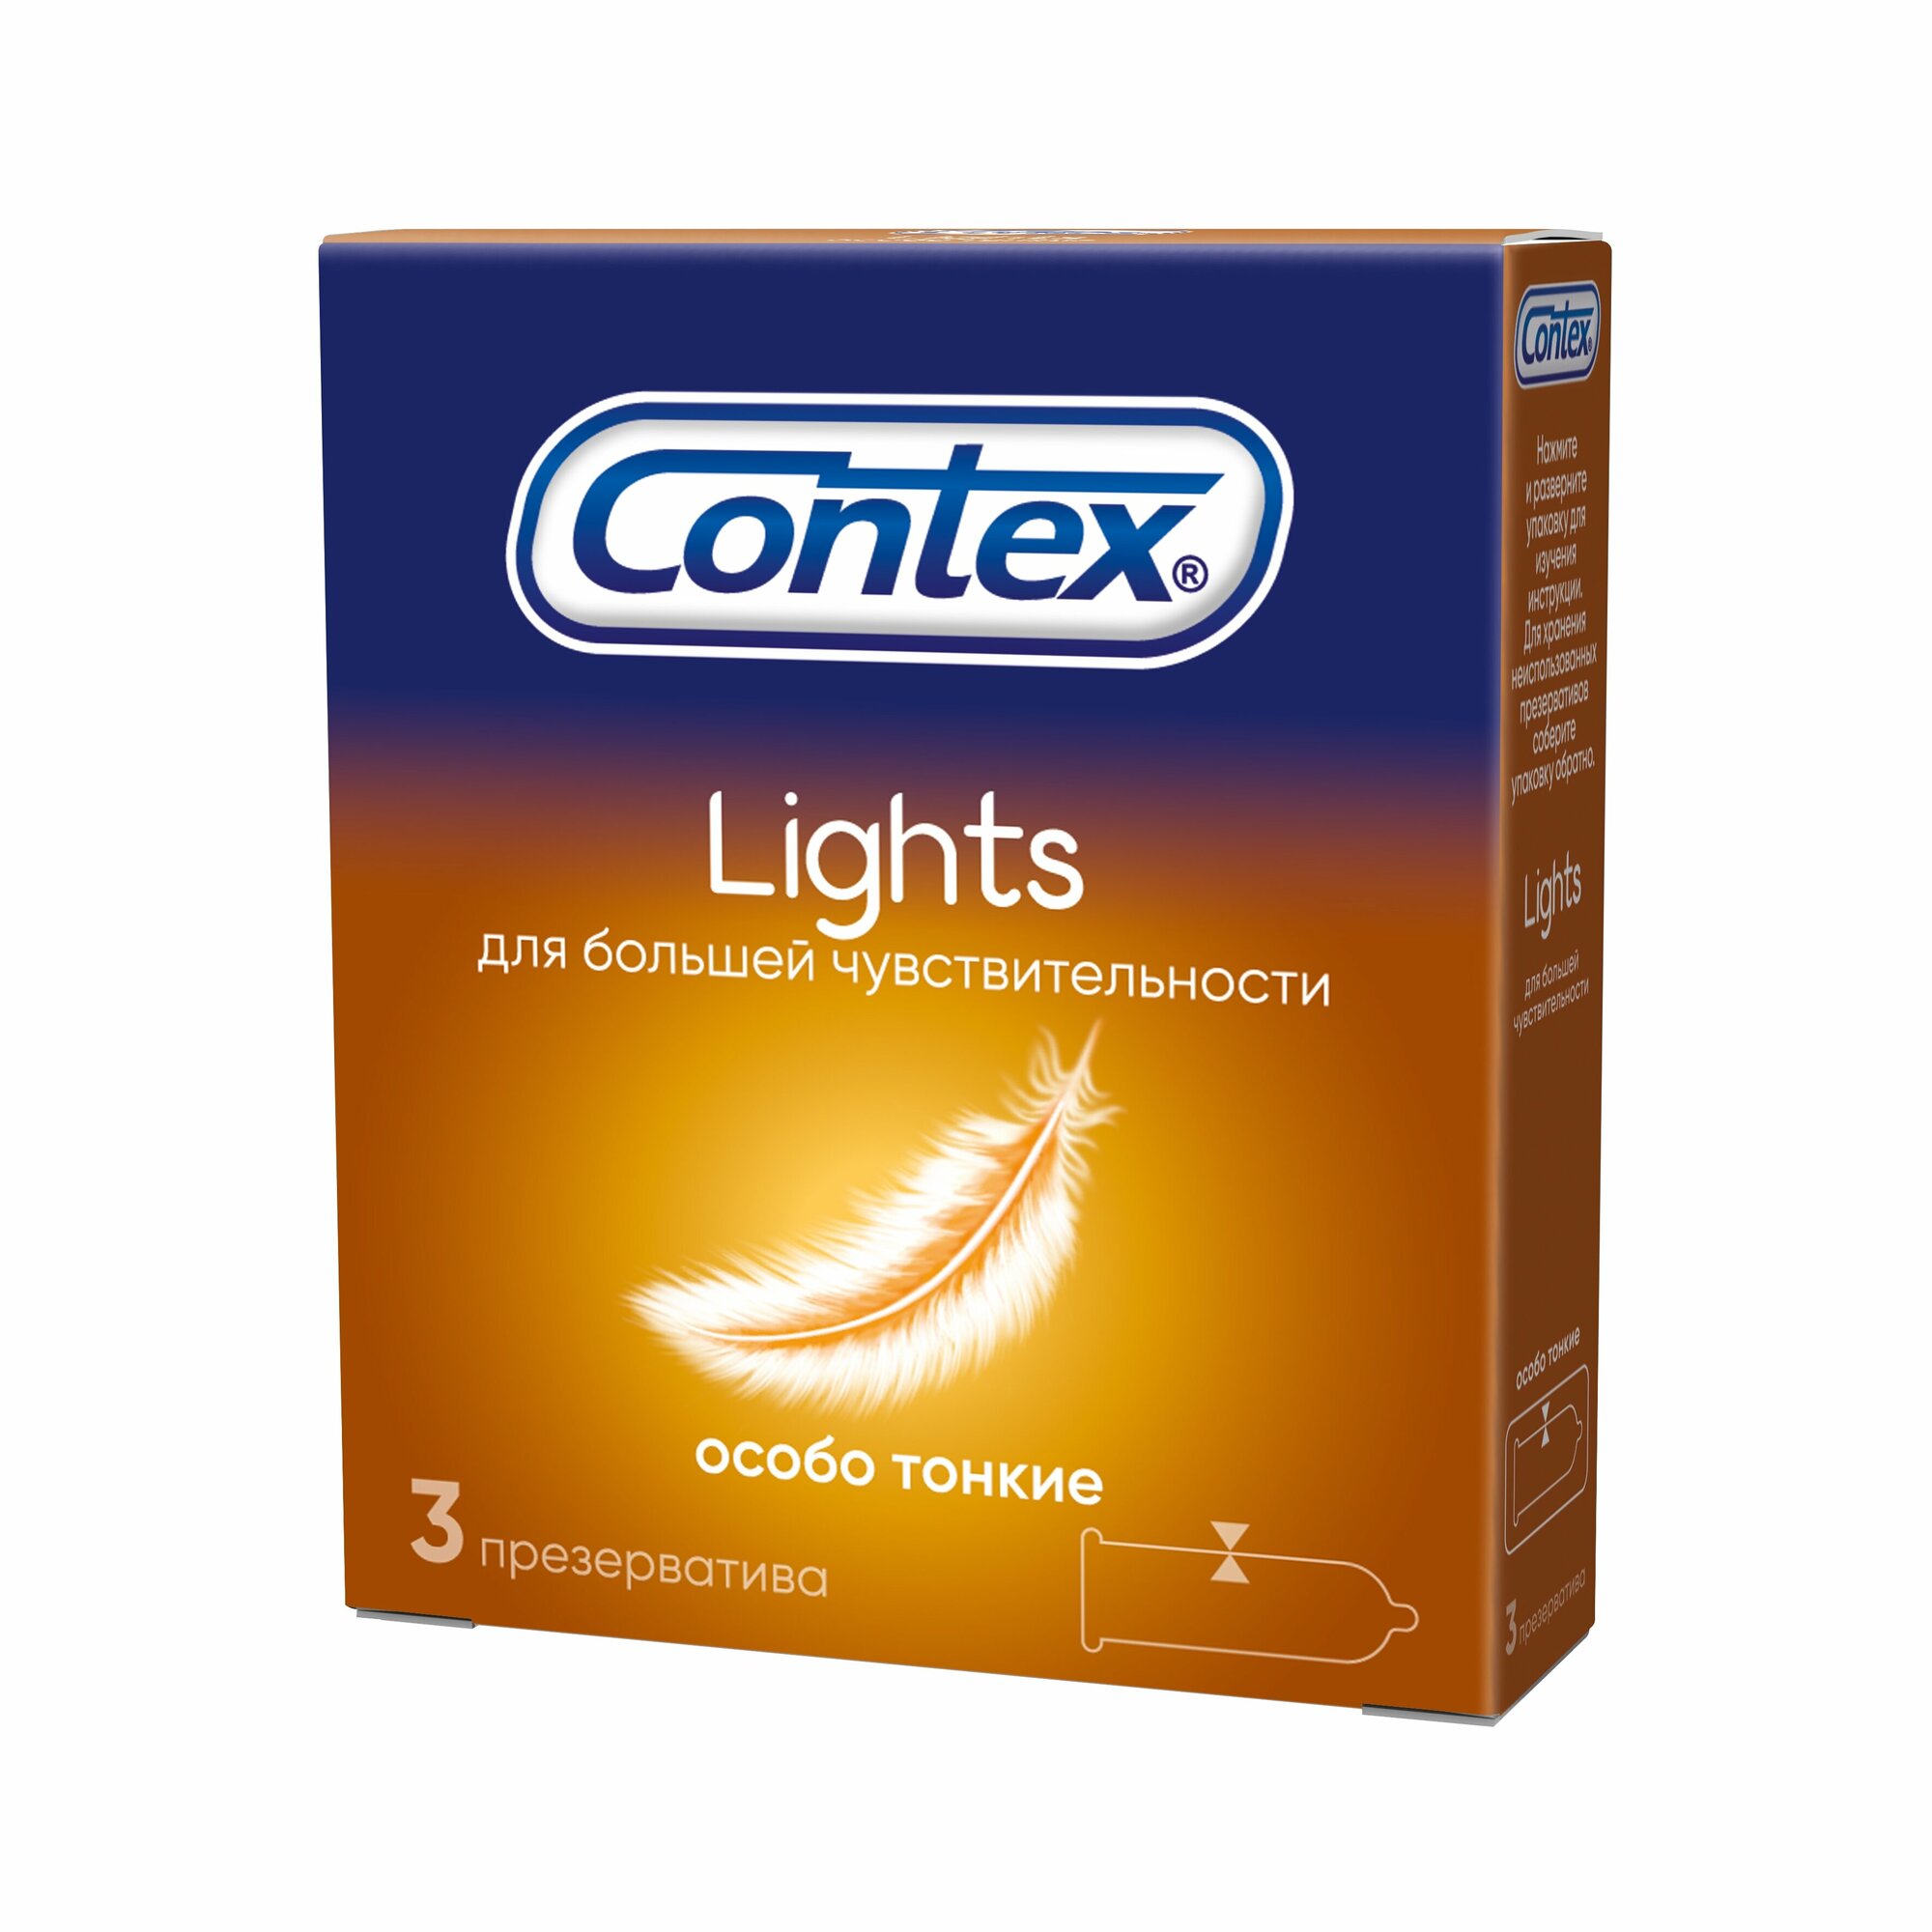 Презервативы Contex (Контекс) Light особо тонкие 18 шт. Рекитт Бенкизер Хелскэар (ЮК) Лтд - фото №17